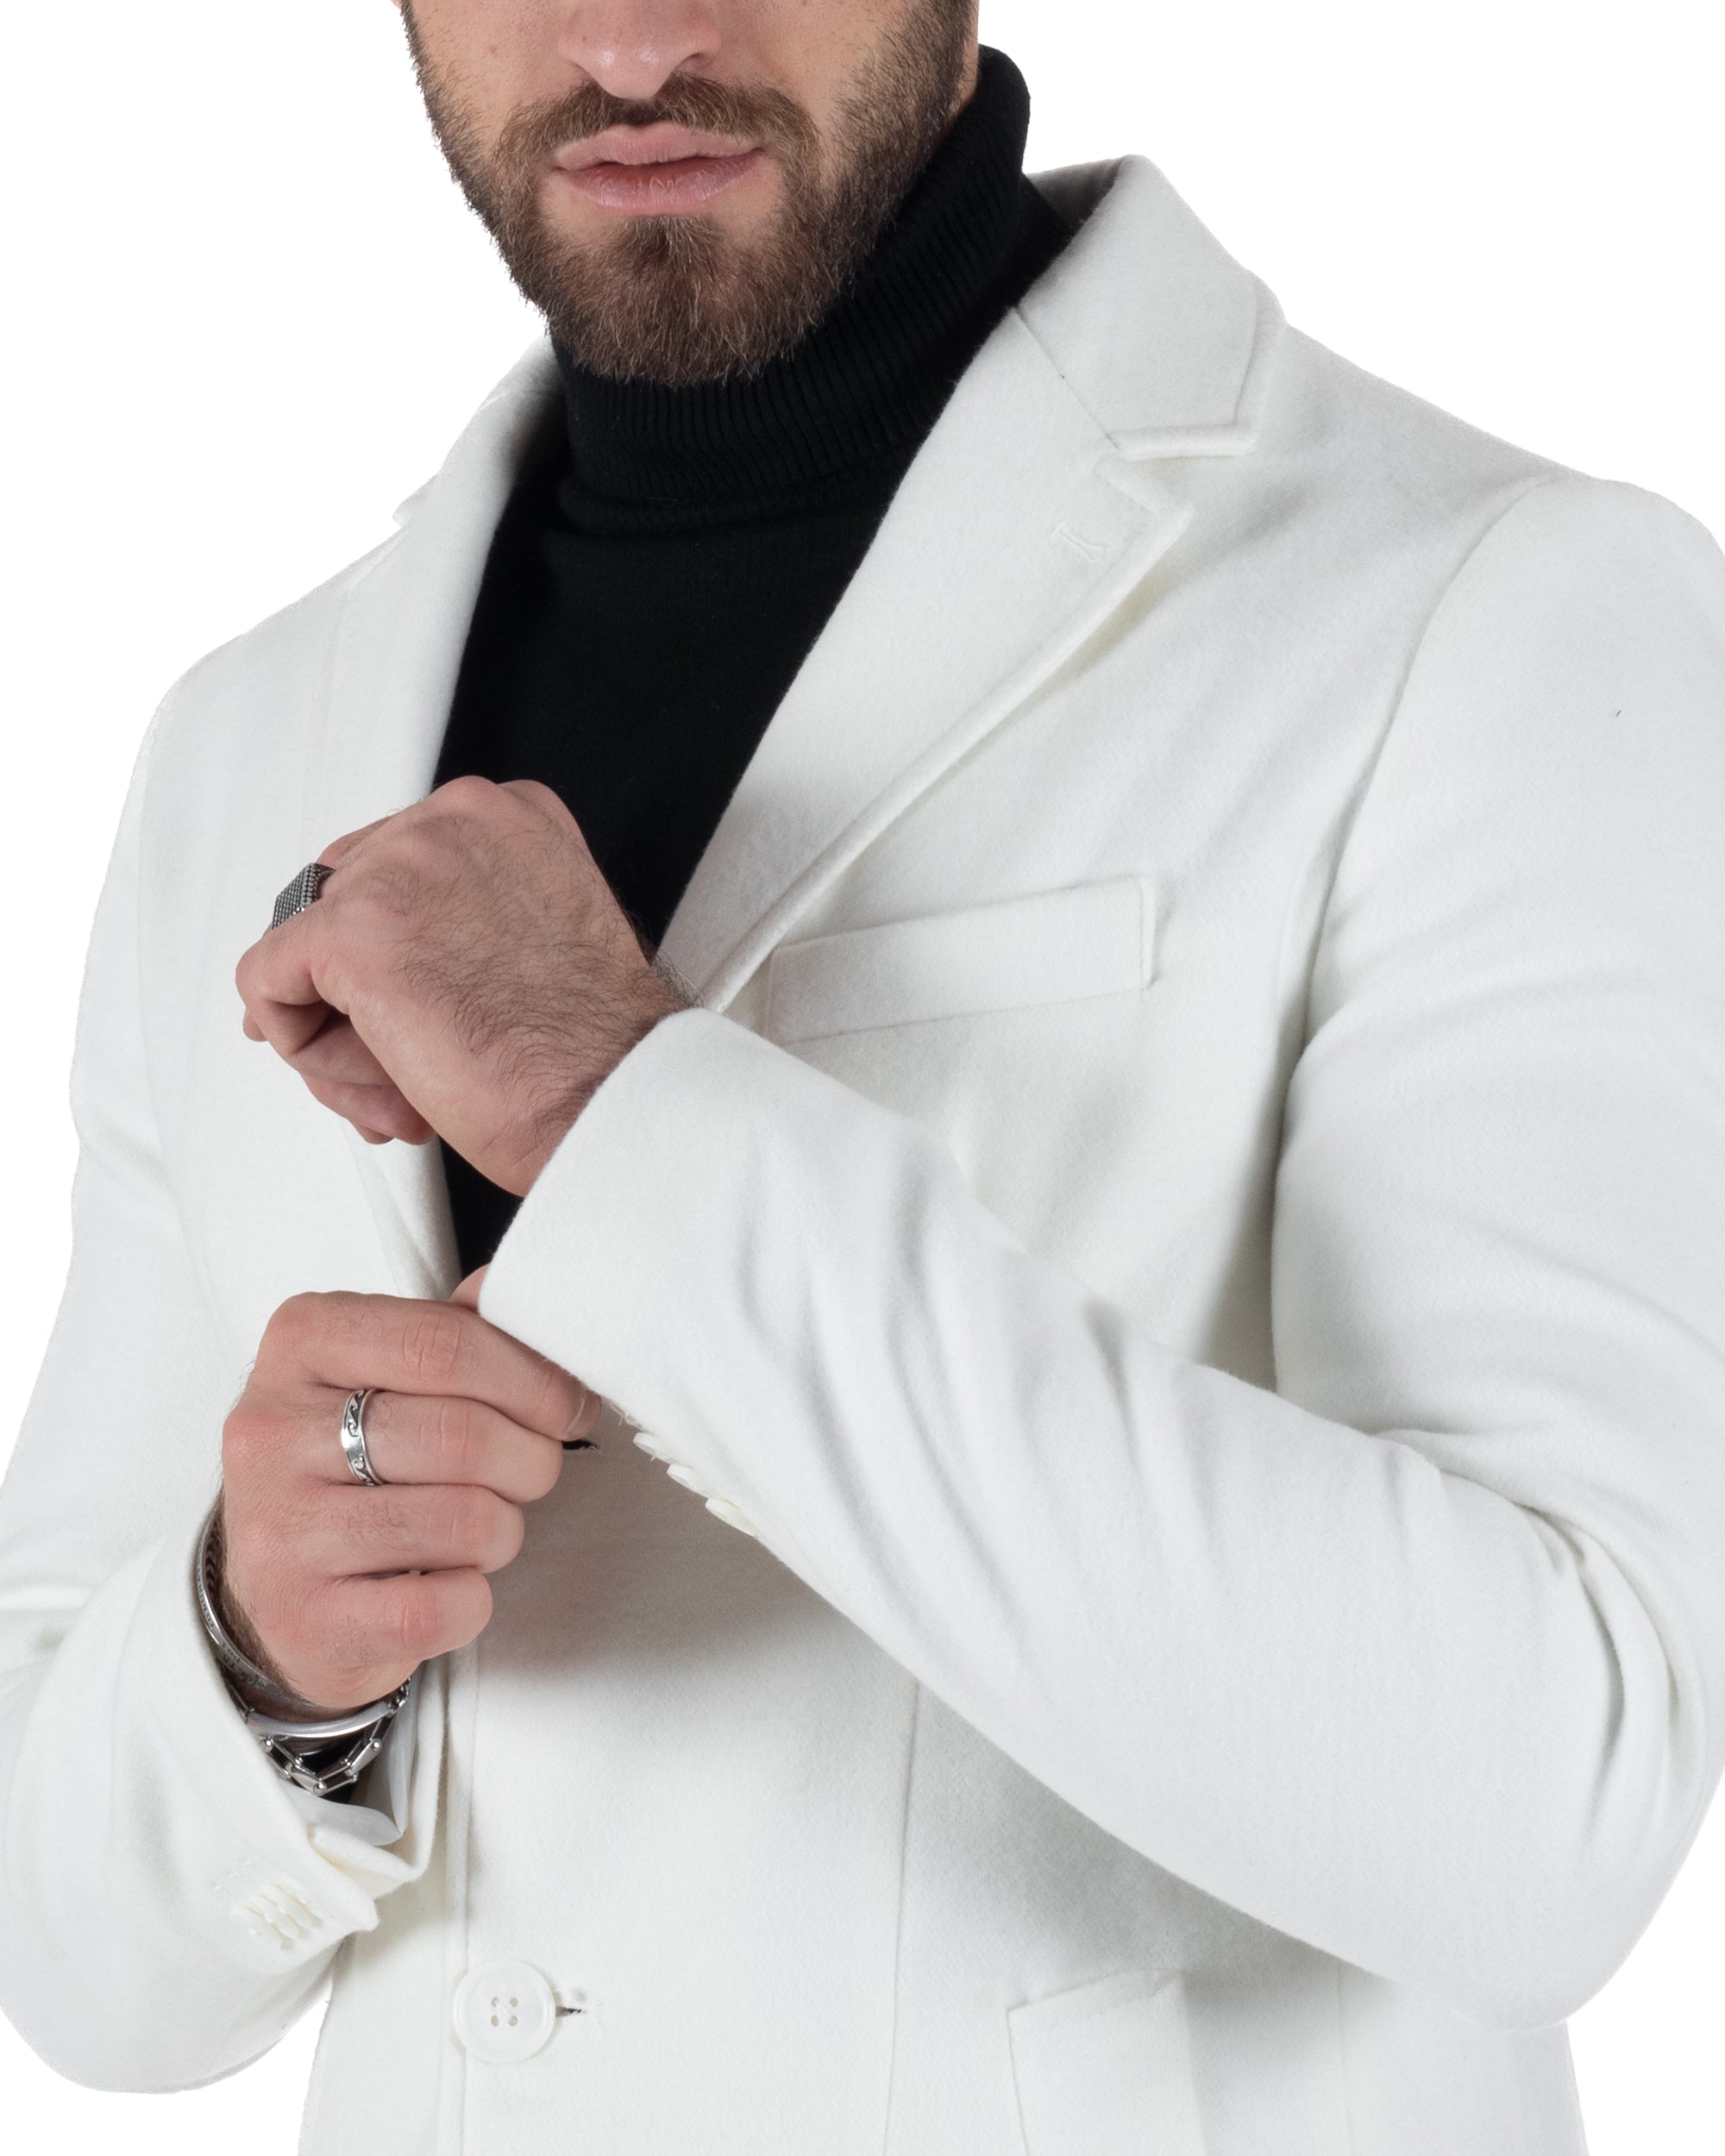 Cappotto Monopetto Uomo Giacca Colletto Reverse Giaccone Tinta Unita Panna Bianco Baronetto Elegante GIOSAL-CO1004A